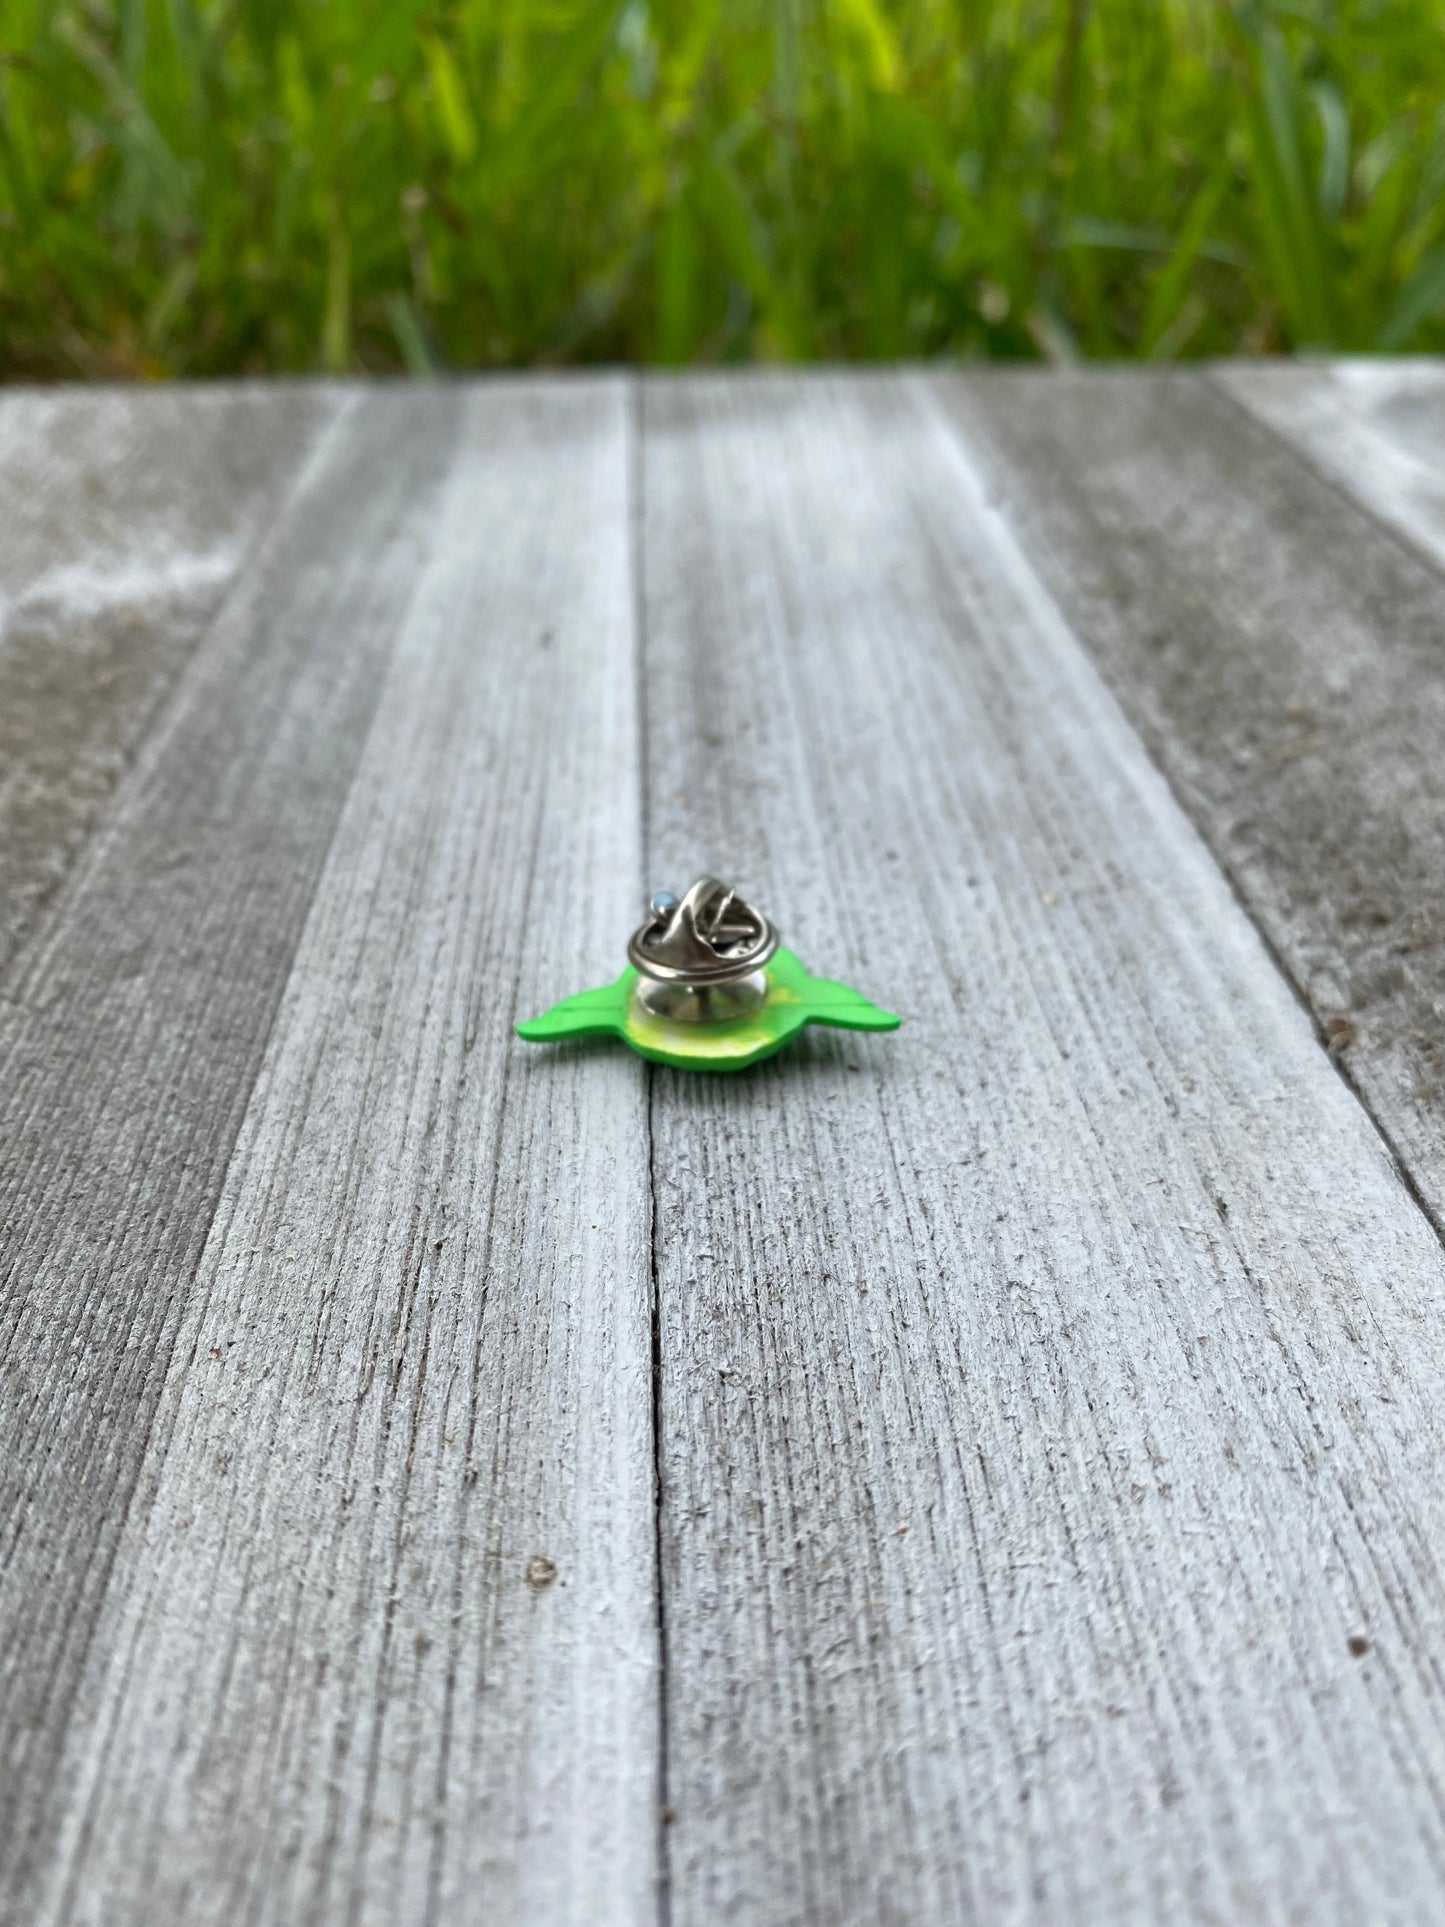 Star Wars Yoda Pin Gift